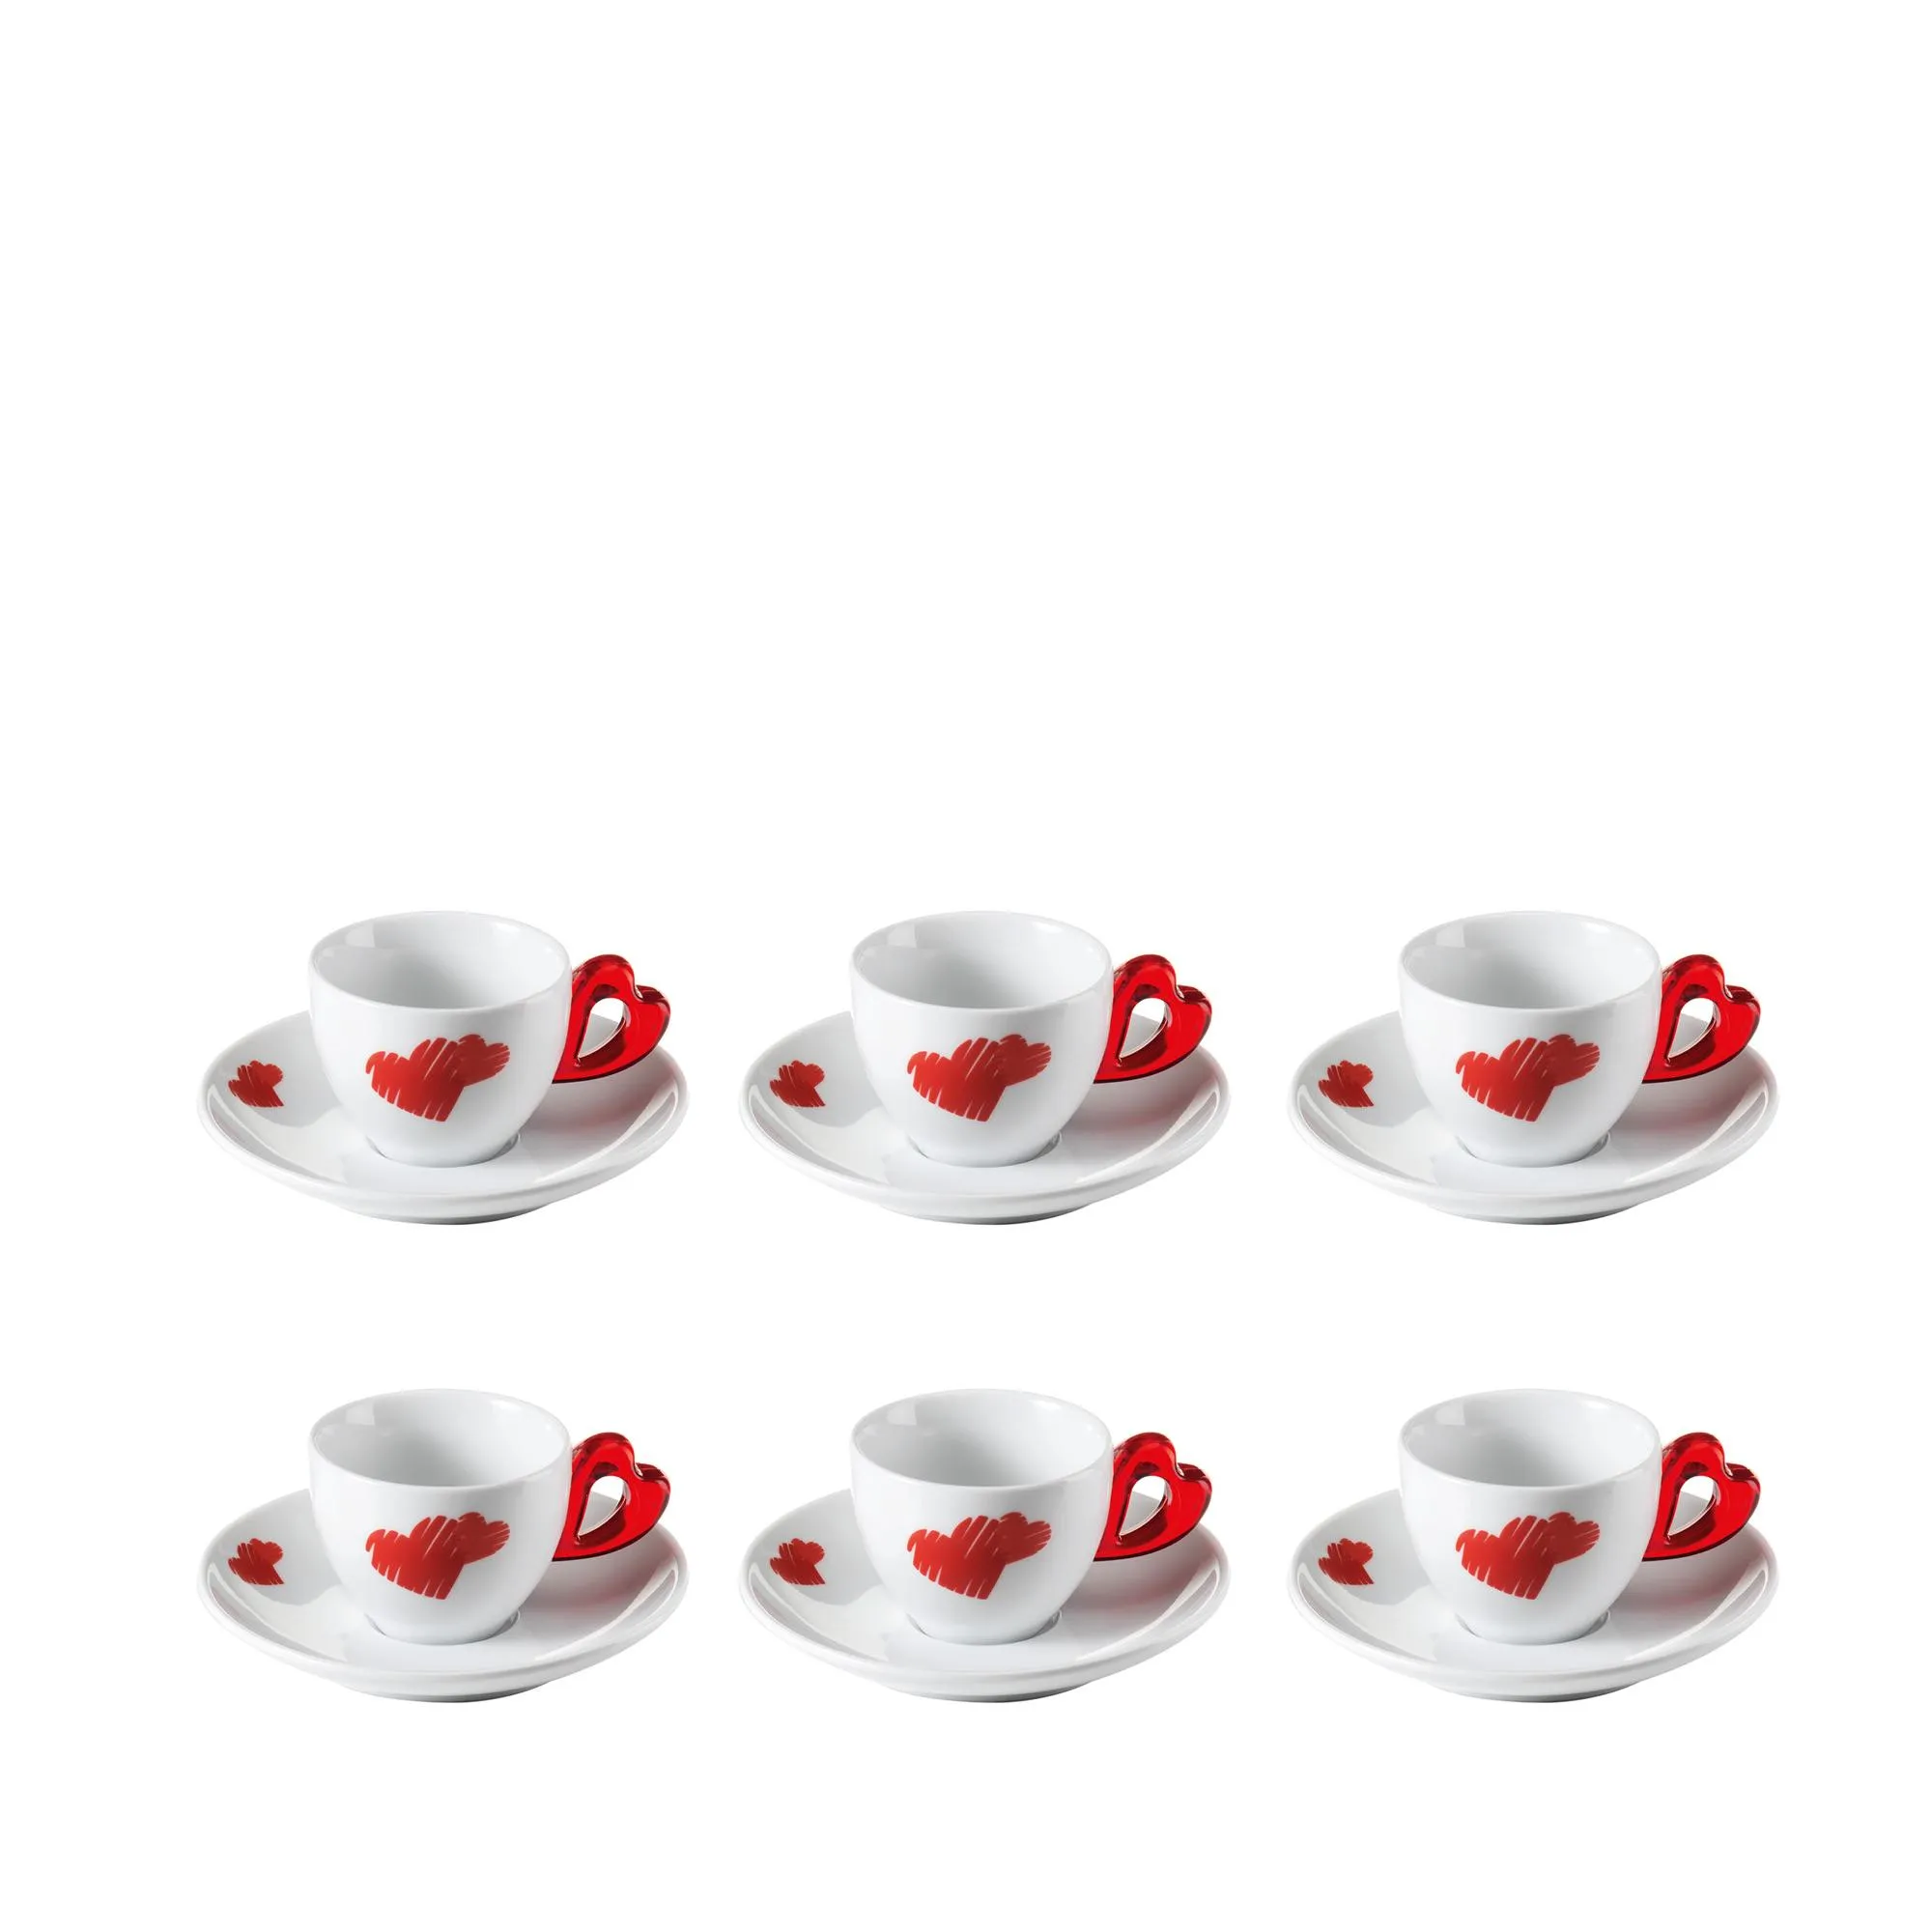 Tazzine caffè con piatto love Ø12xh6 cm - 50 cc set 6 tazzine con piattini colore rosso